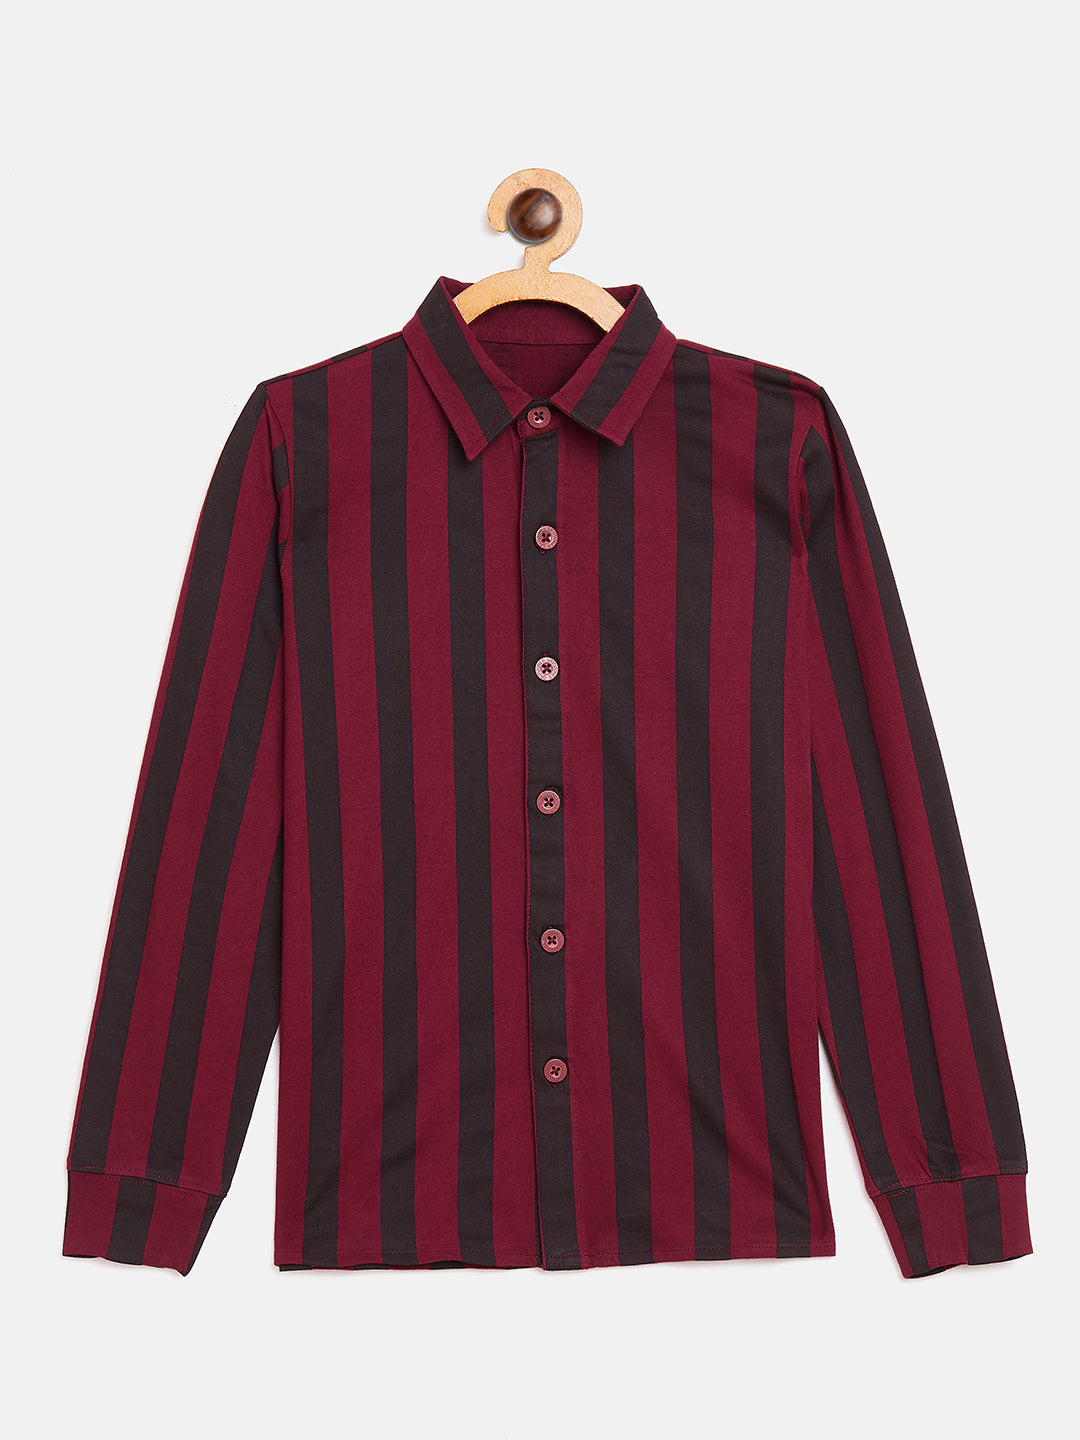 Maroon/Black Kids Full Sleeves Vertical Striped Printed Shirt